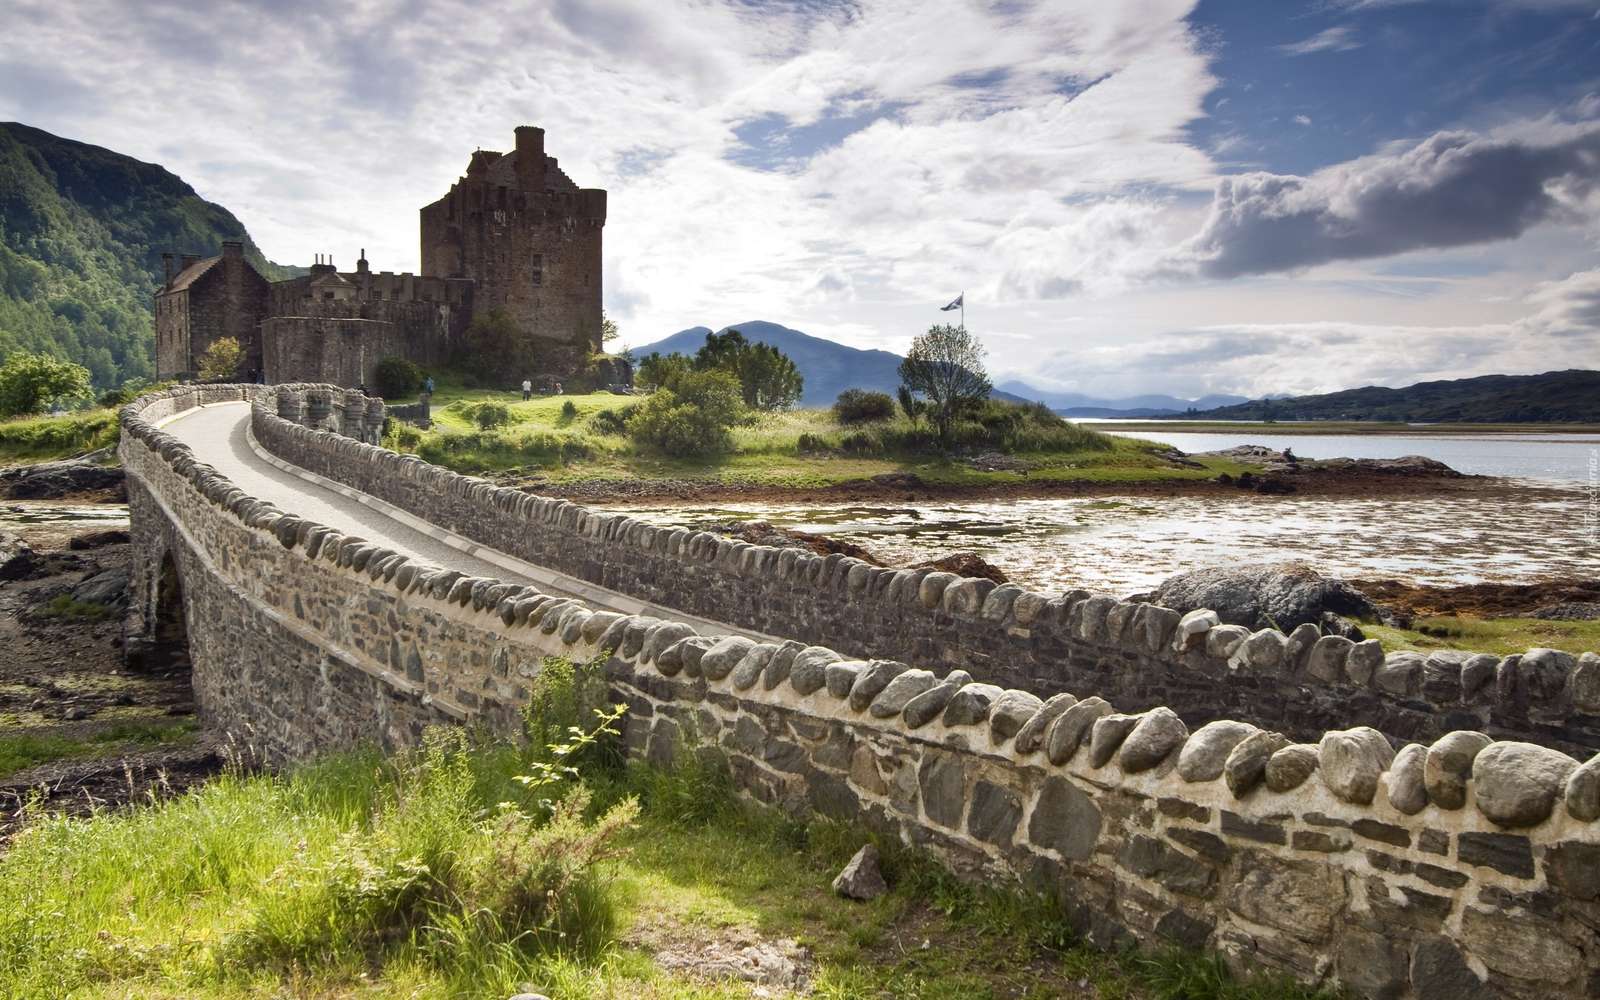 スコットランドの風景。 ジグソーパズルオンライン